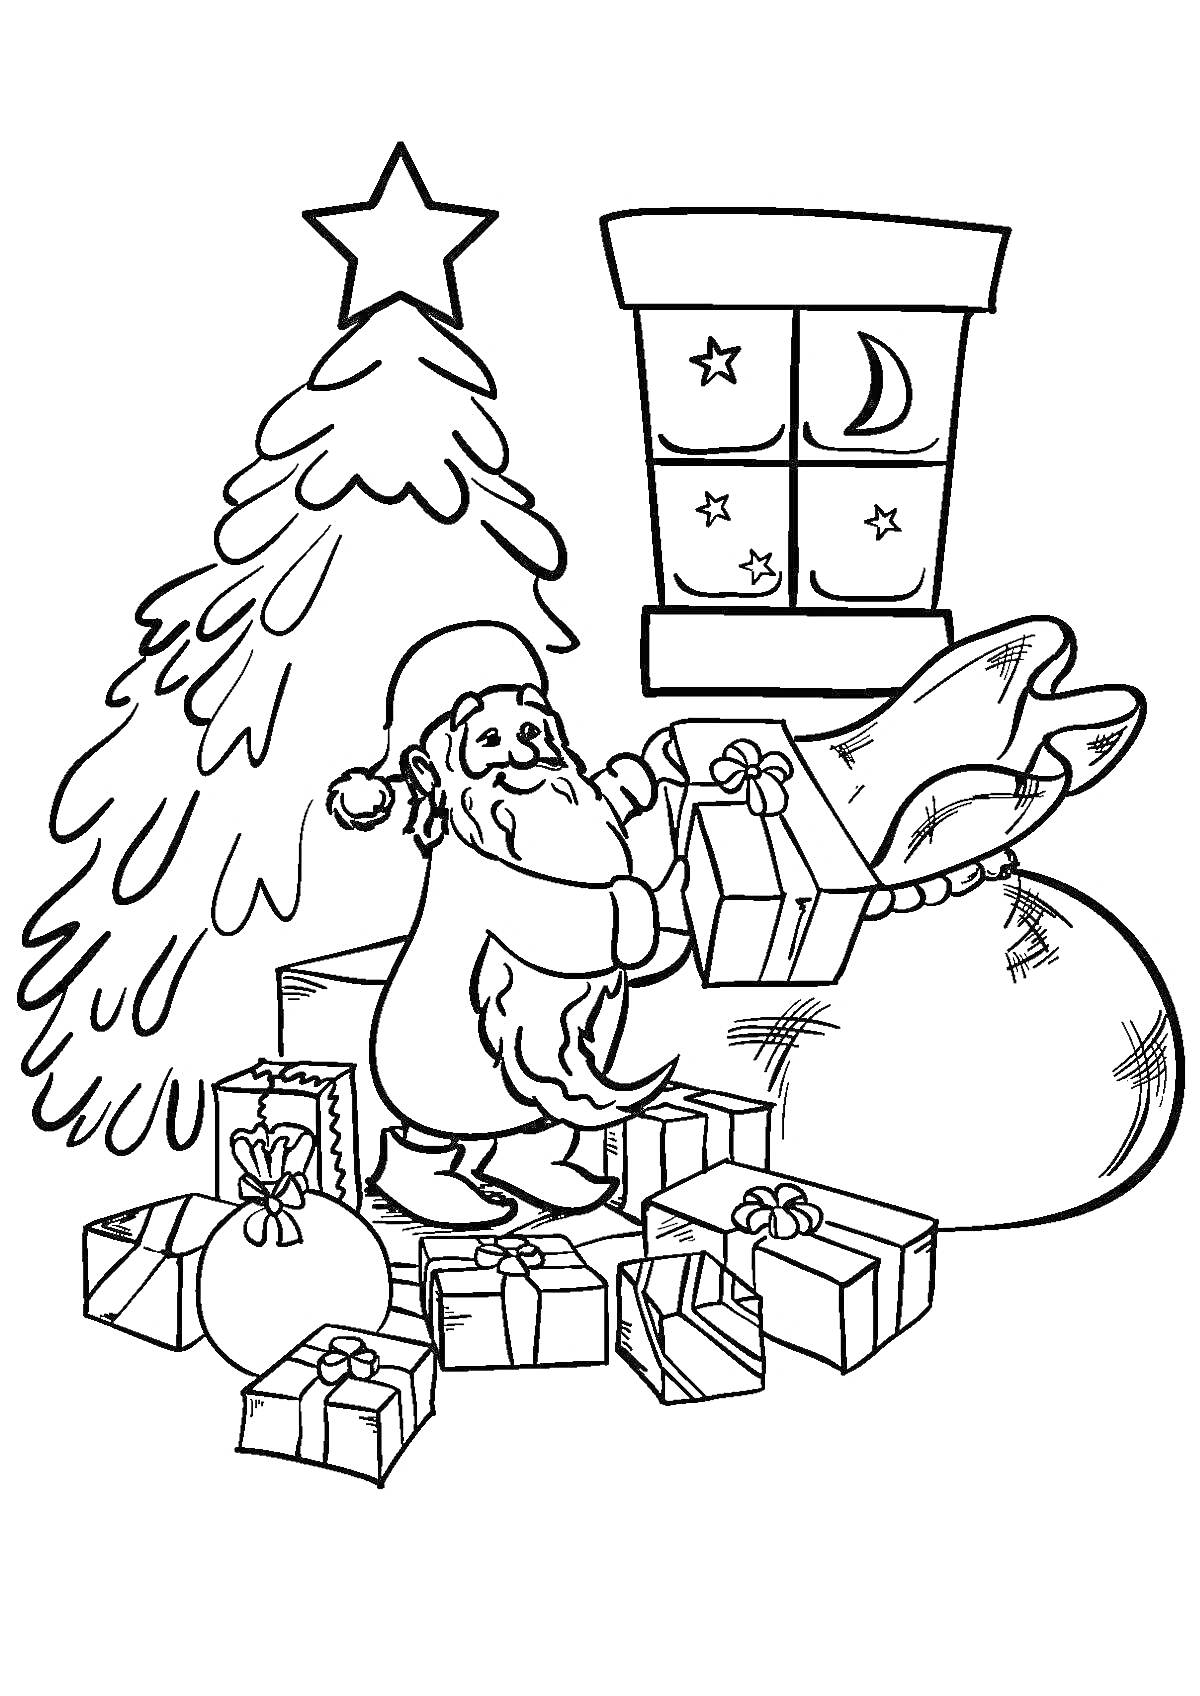 Раскраска Санта в процессе упаковки новогодних подарков у ёлки, рядом с мешком подарков и под окном с видом на луну и звёзды